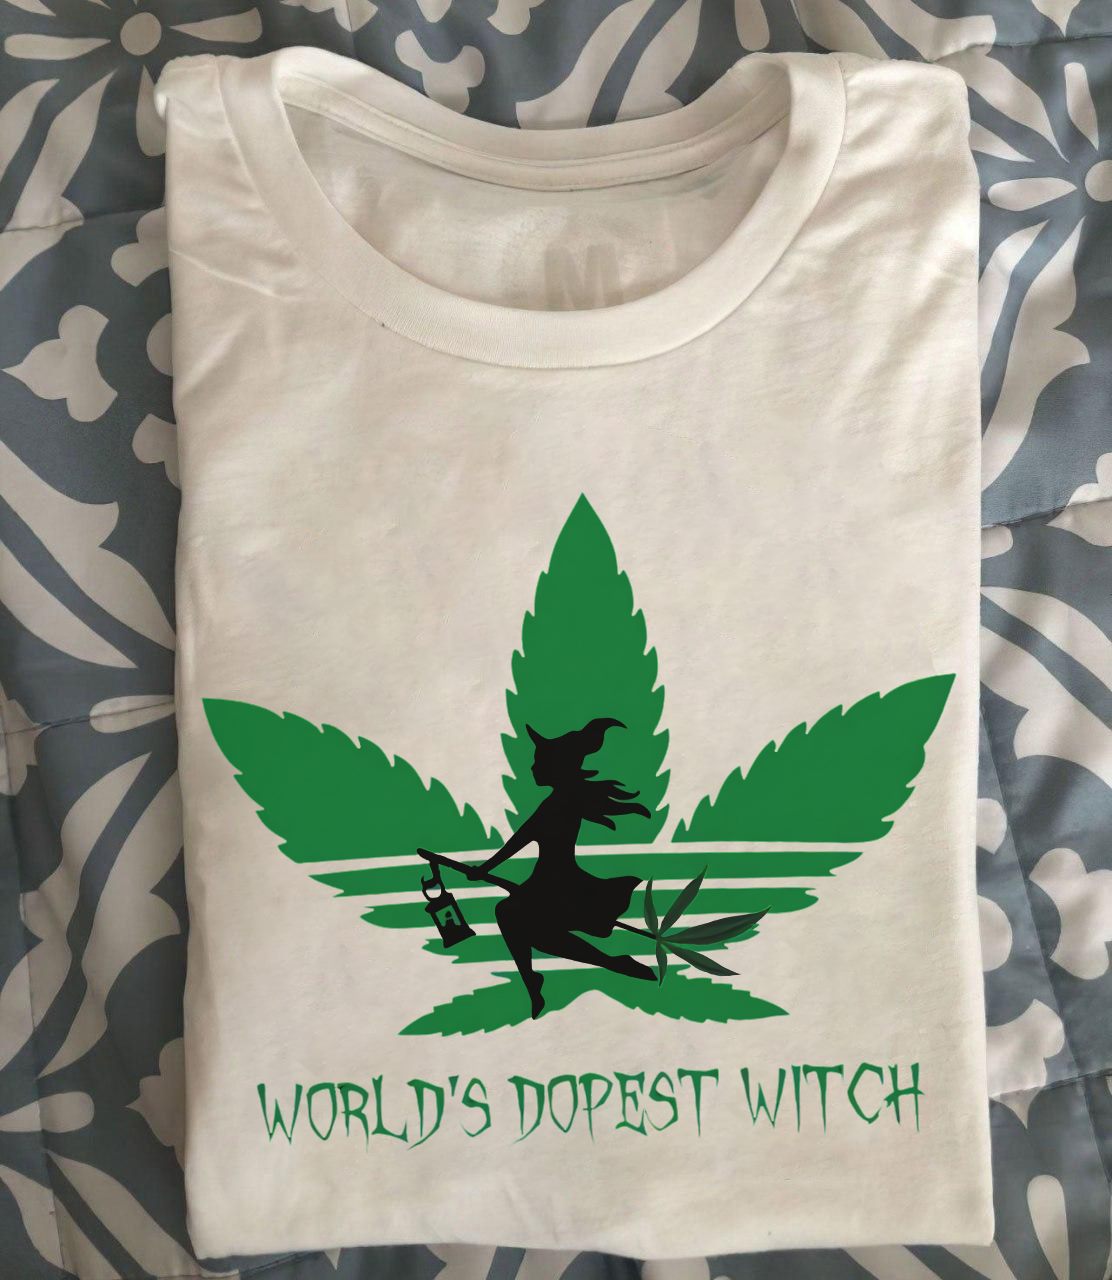 T-Shirt Adidas Cannabis